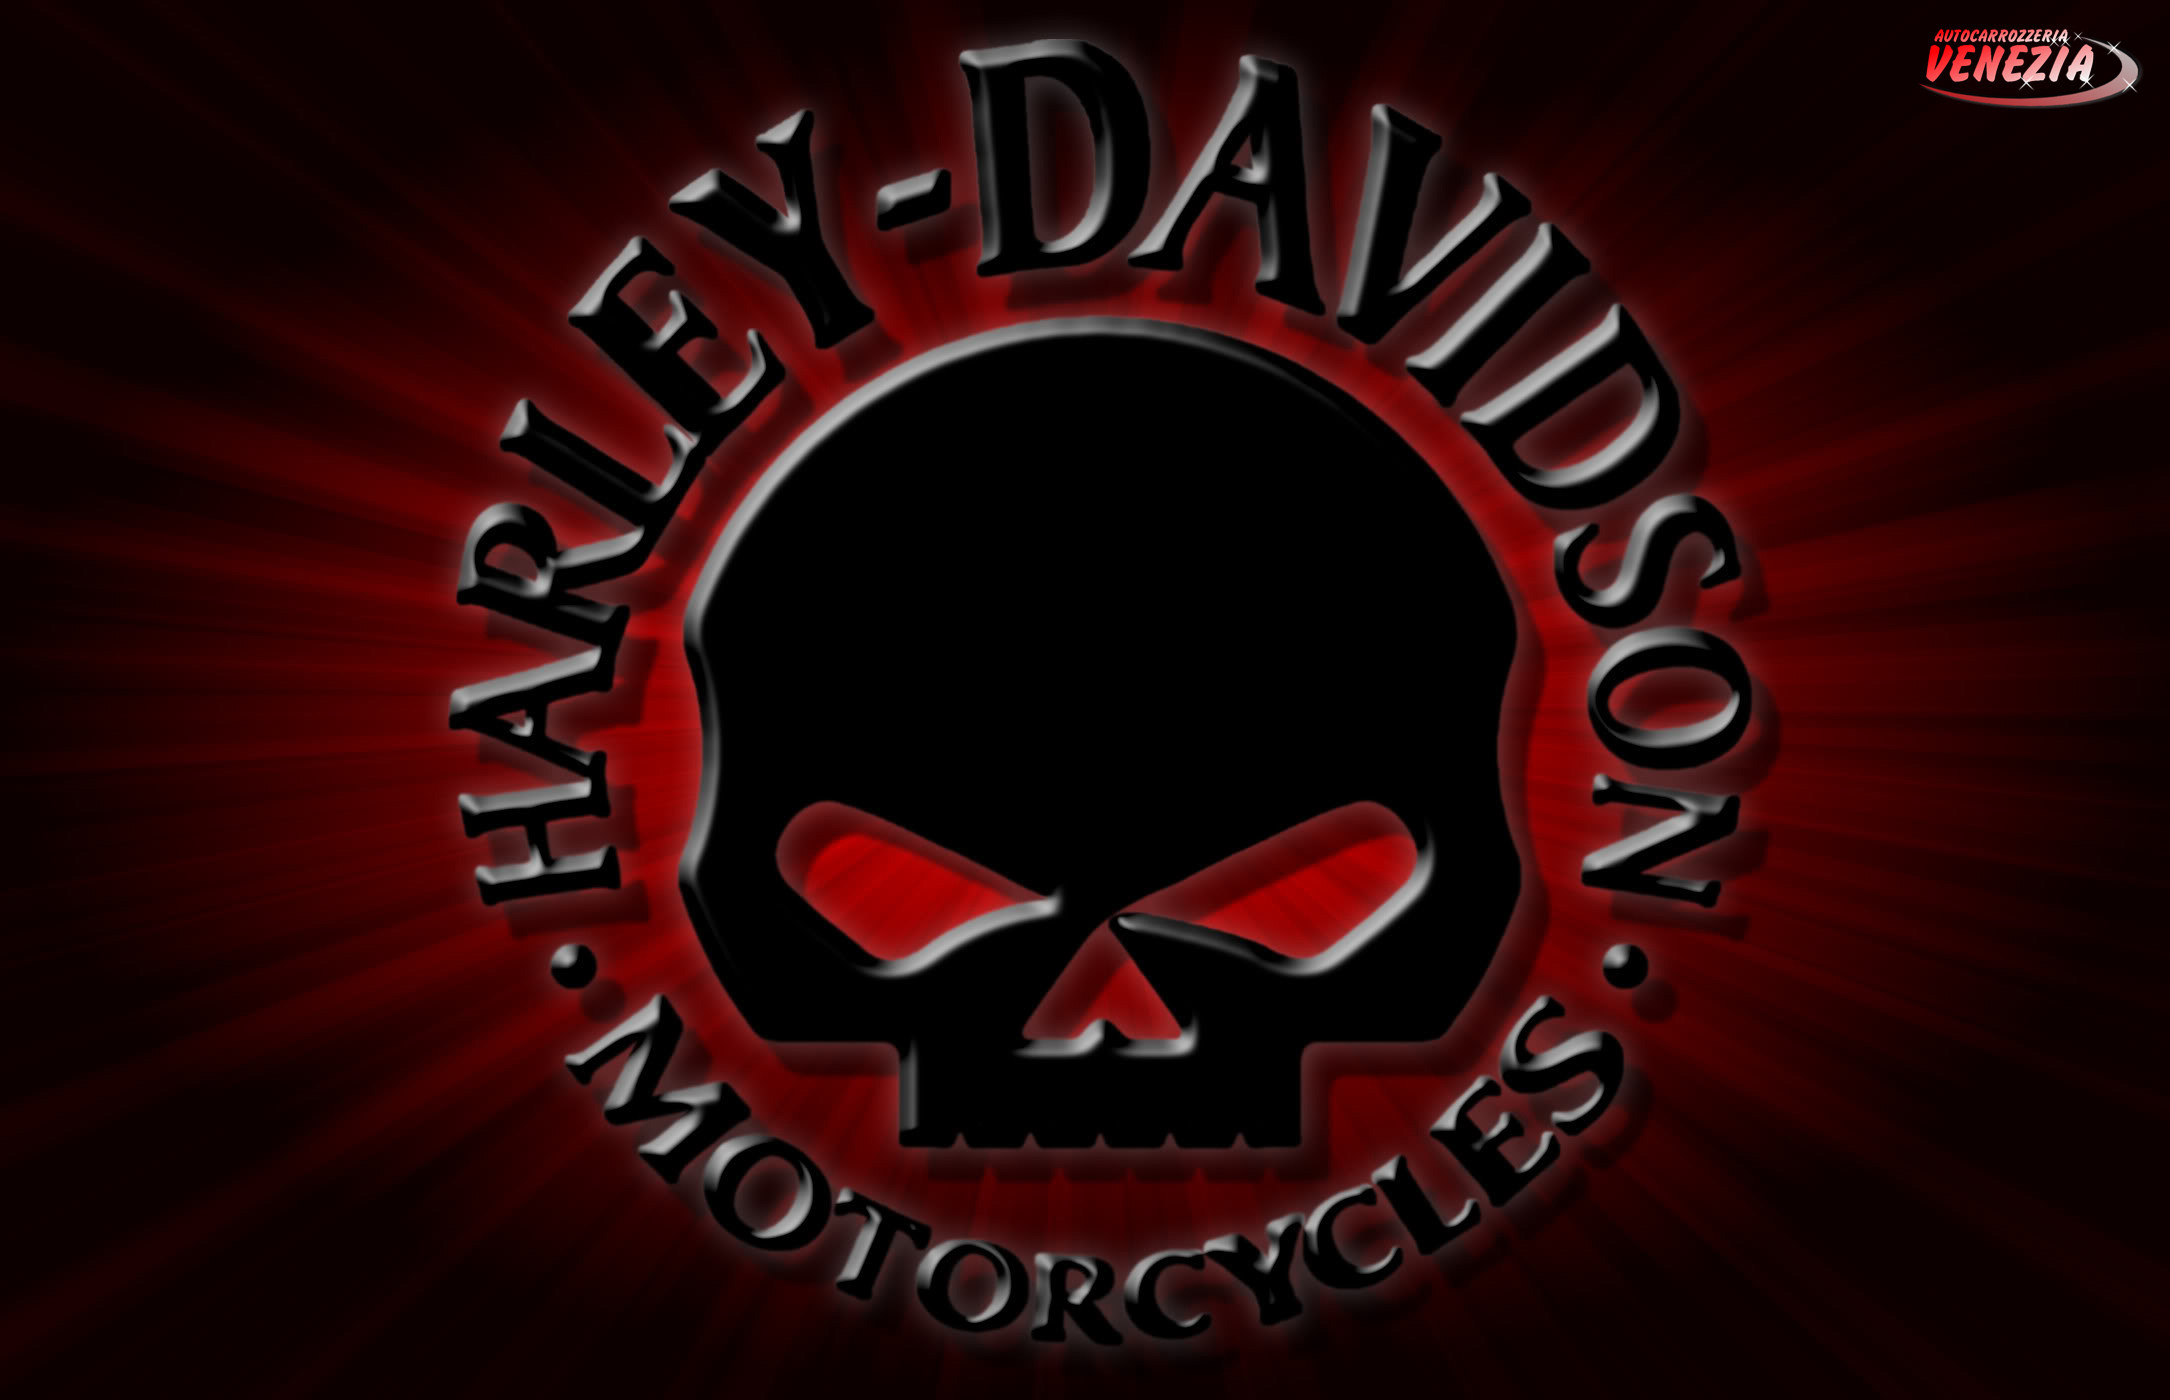 2170x1400 Willie G Harley Davidson Pinterest 